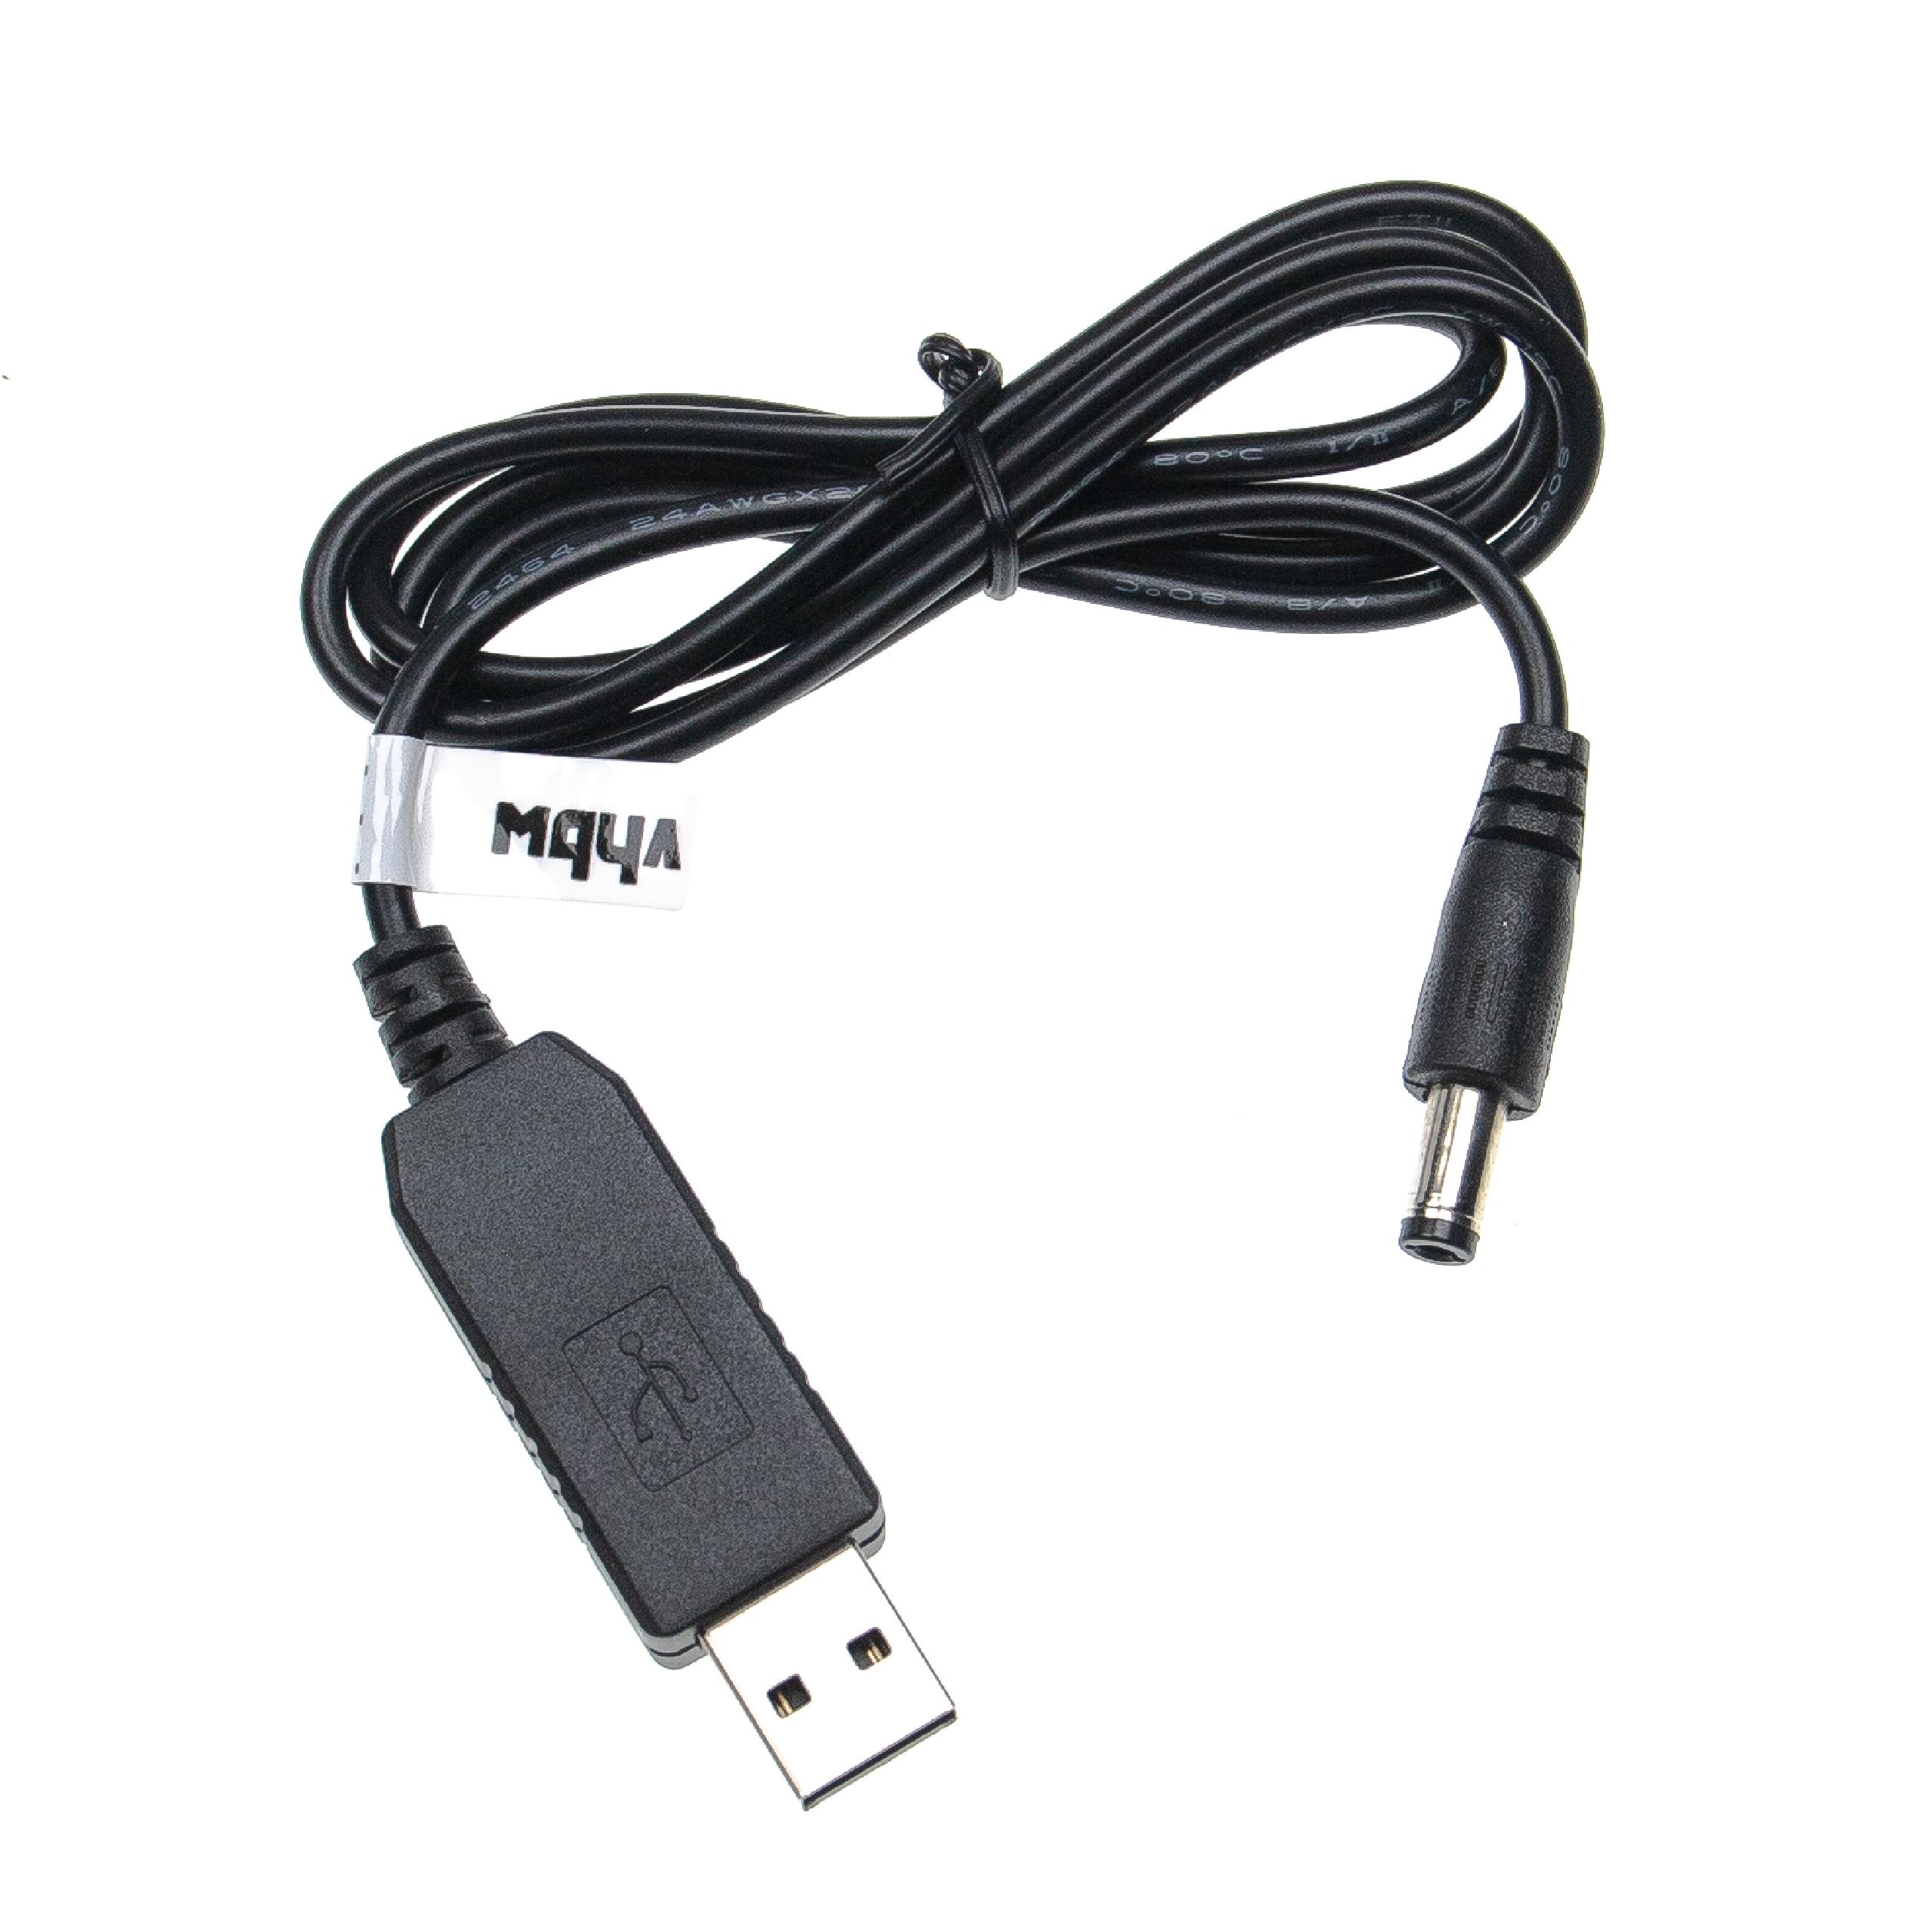  Ladekabel USB auf 5,5 x 2,5 mm Hohlstecker - 5 V / 2 A zu 12 V / 0,7 A 